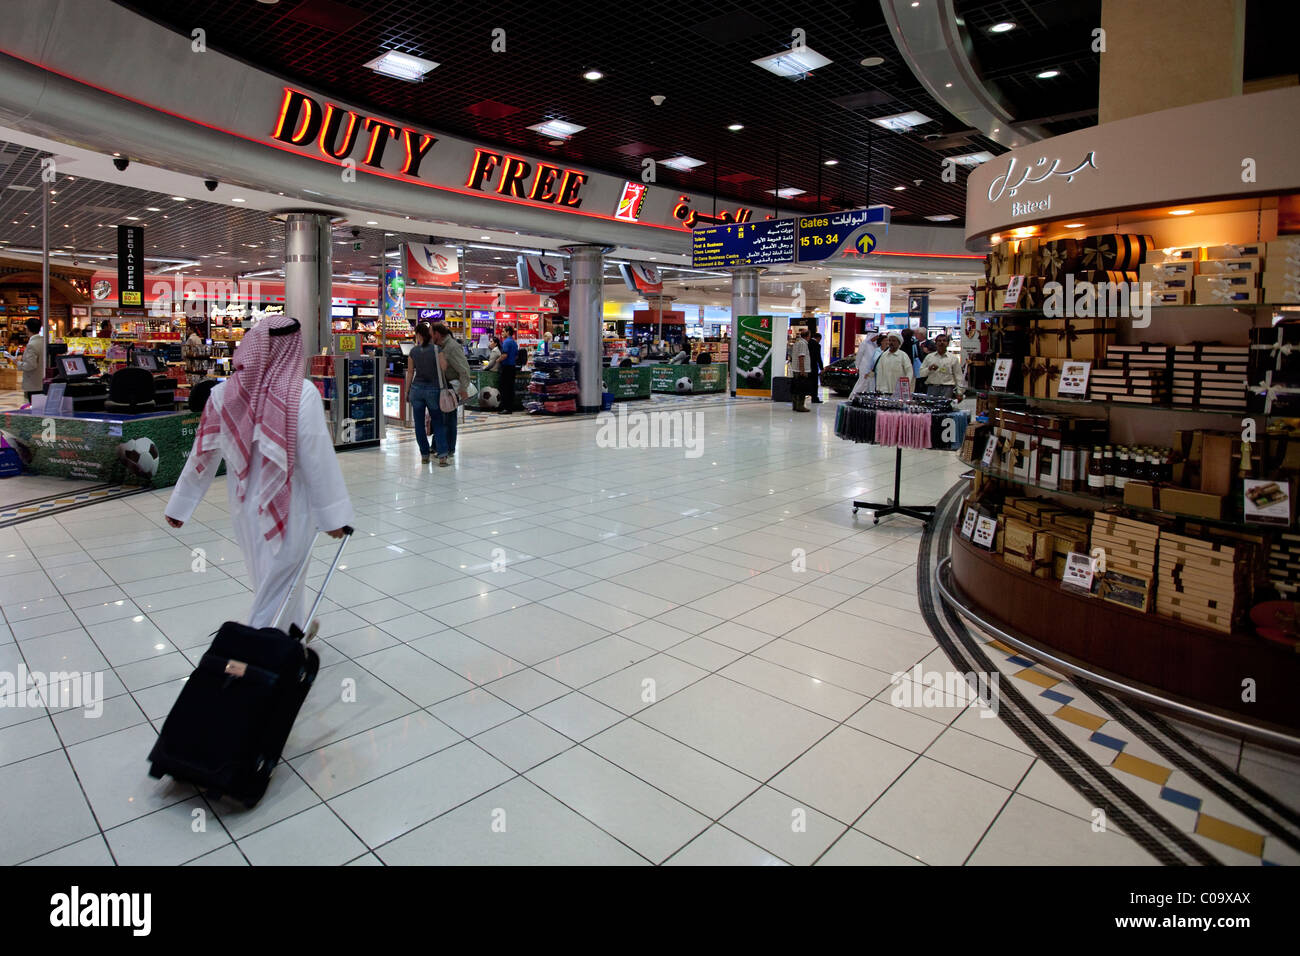 Duty Free, Aéroport International, hall de départ, capitale Manama, Royaume de Bahreïn, du Golfe Persique Banque D'Images